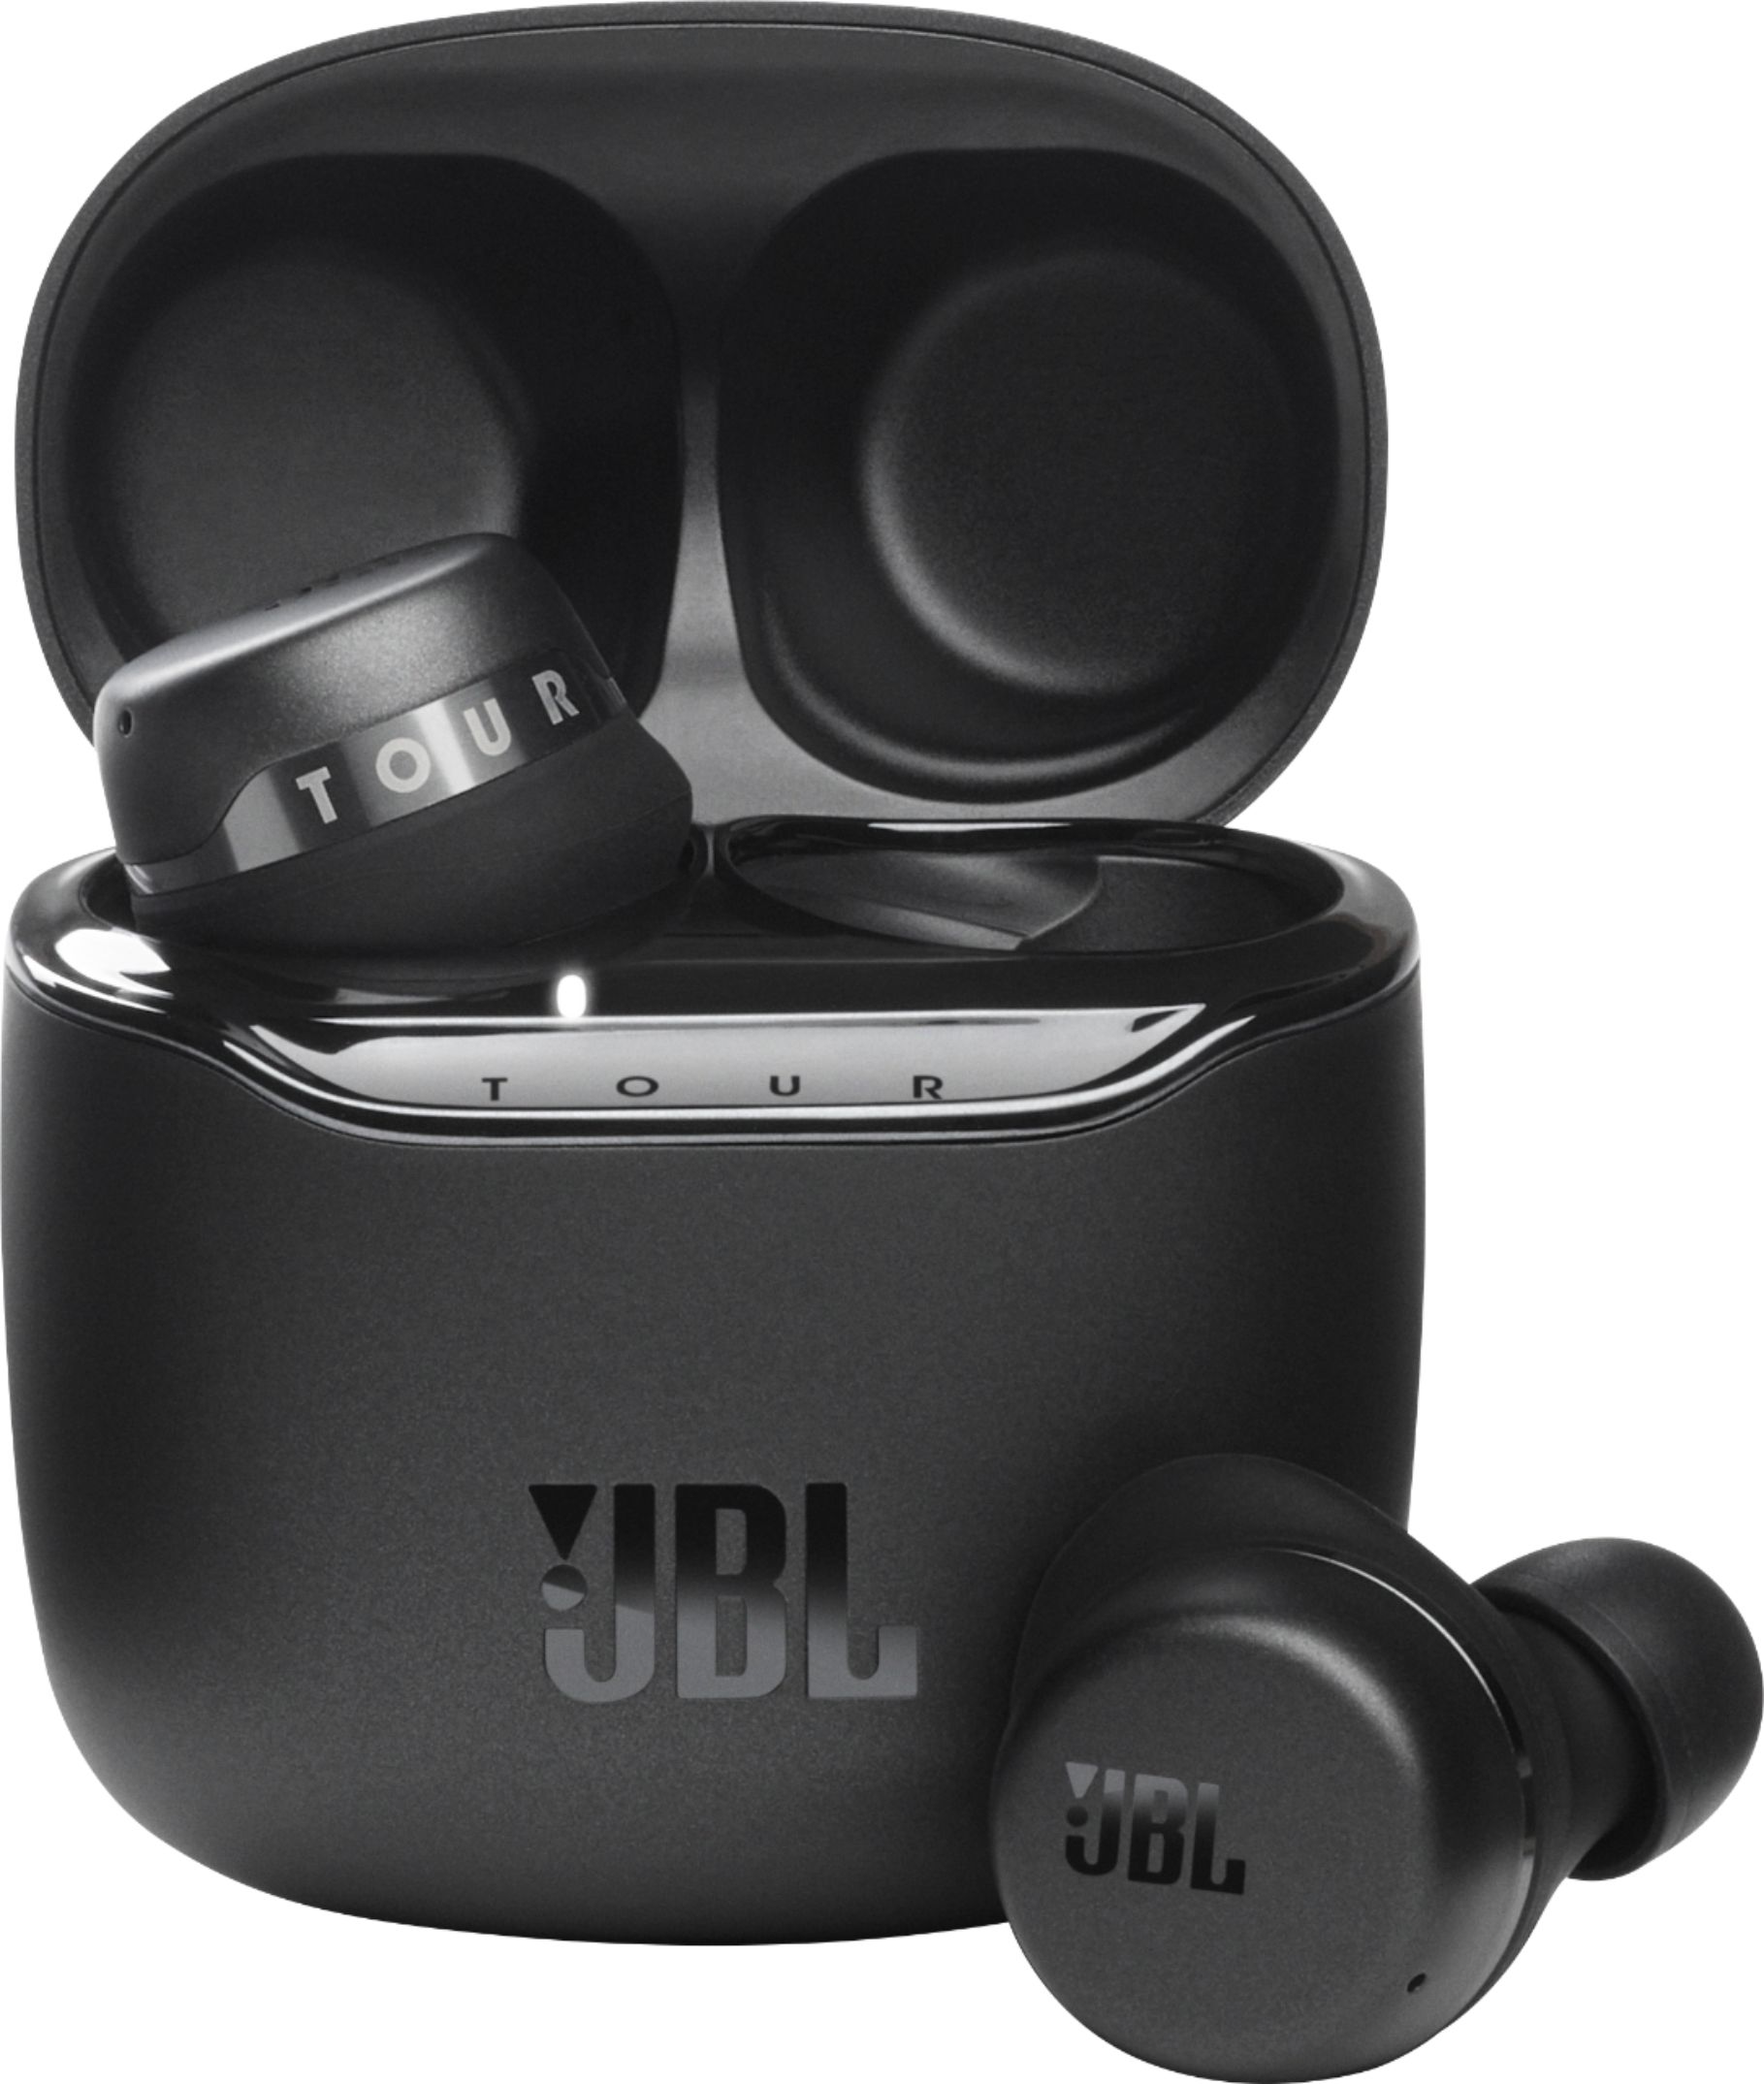 JBL Tour Pro Plus True Wireless Noise Cancelling Headphones 